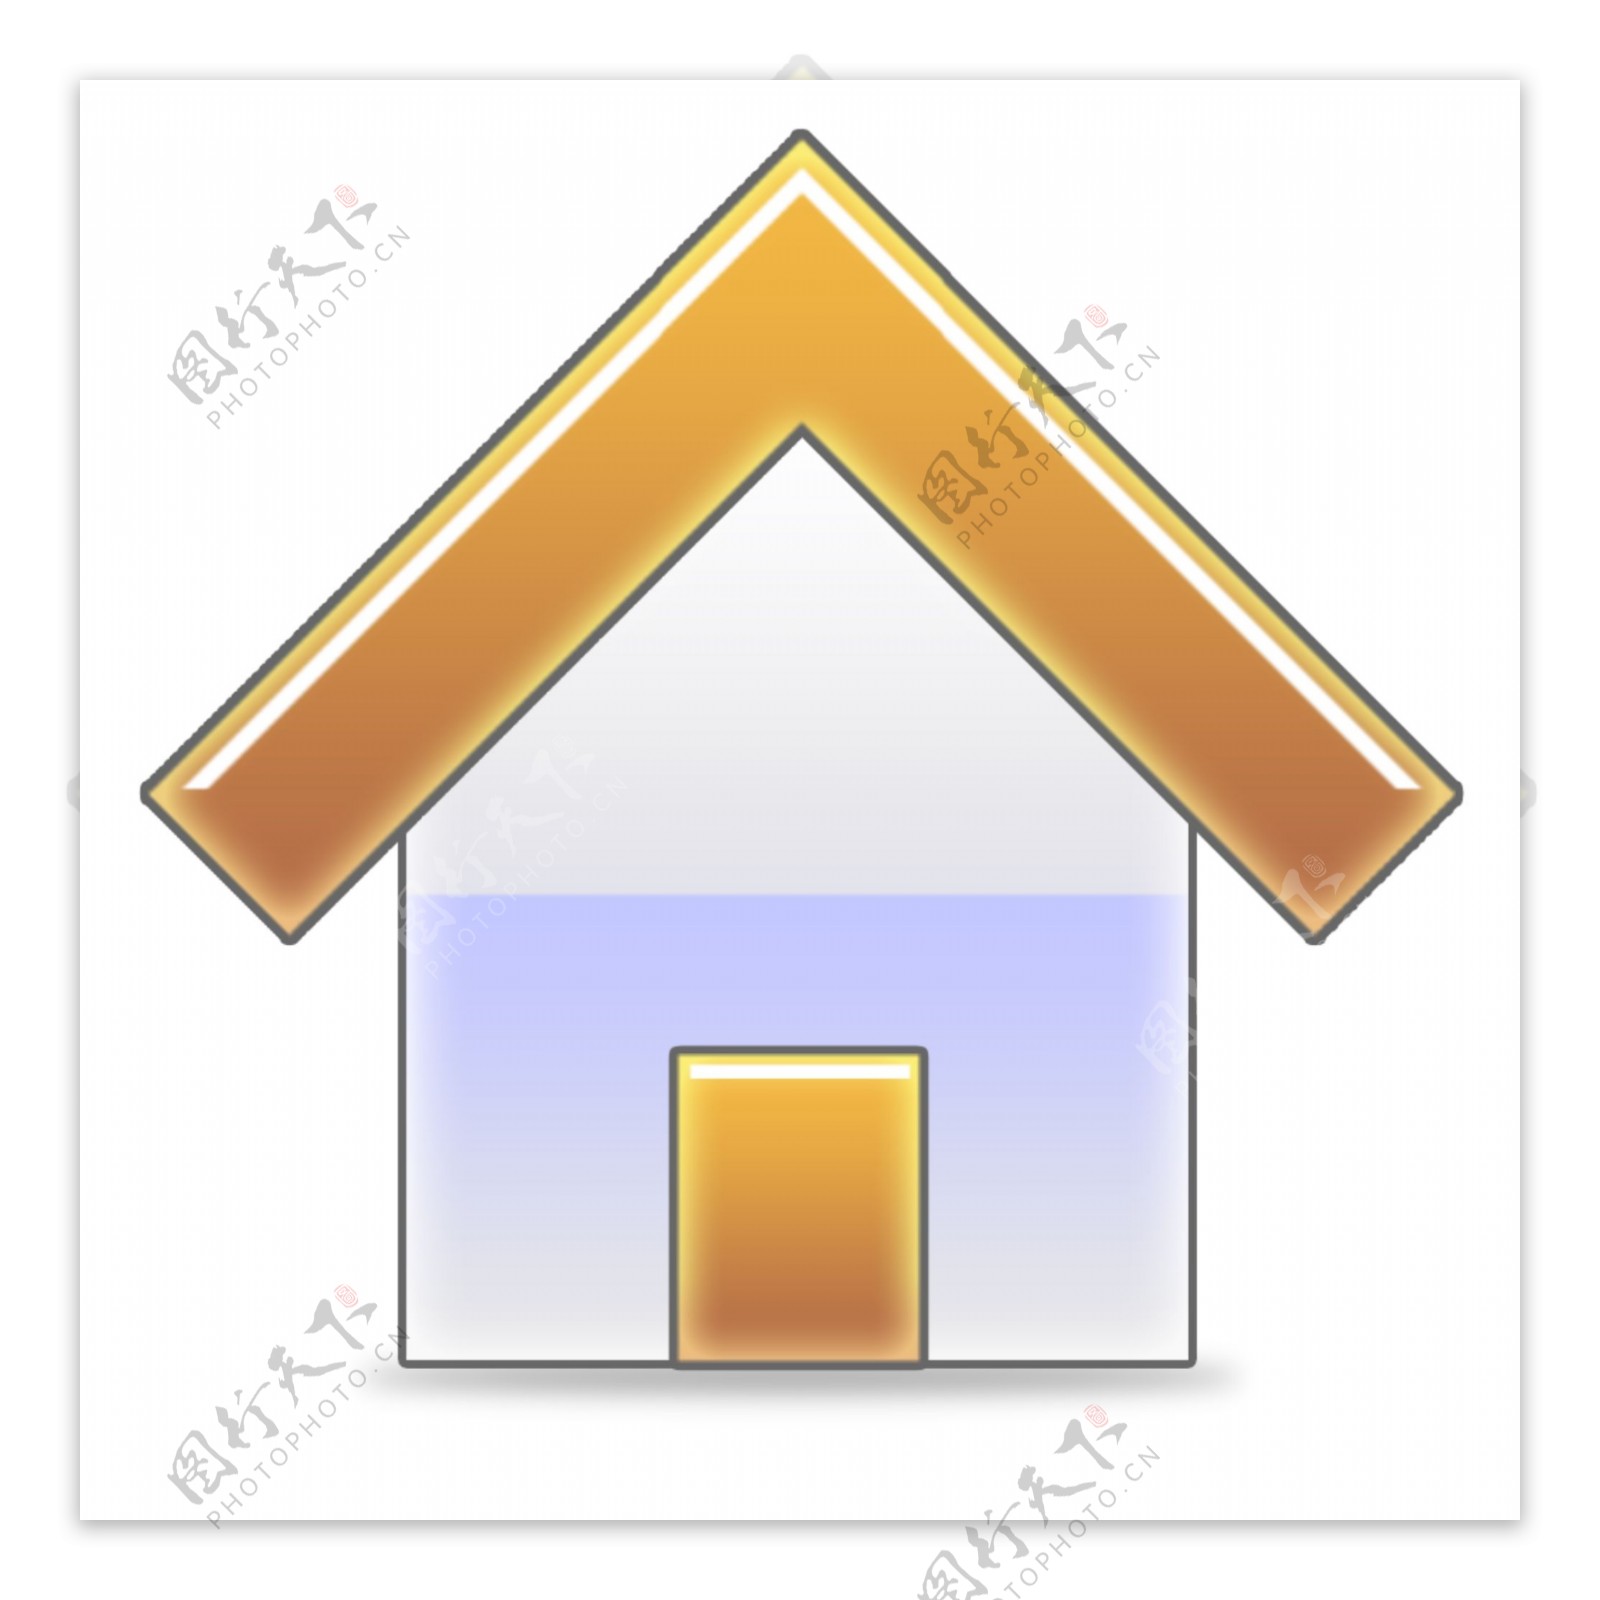 网页彩色房子首页icon图标